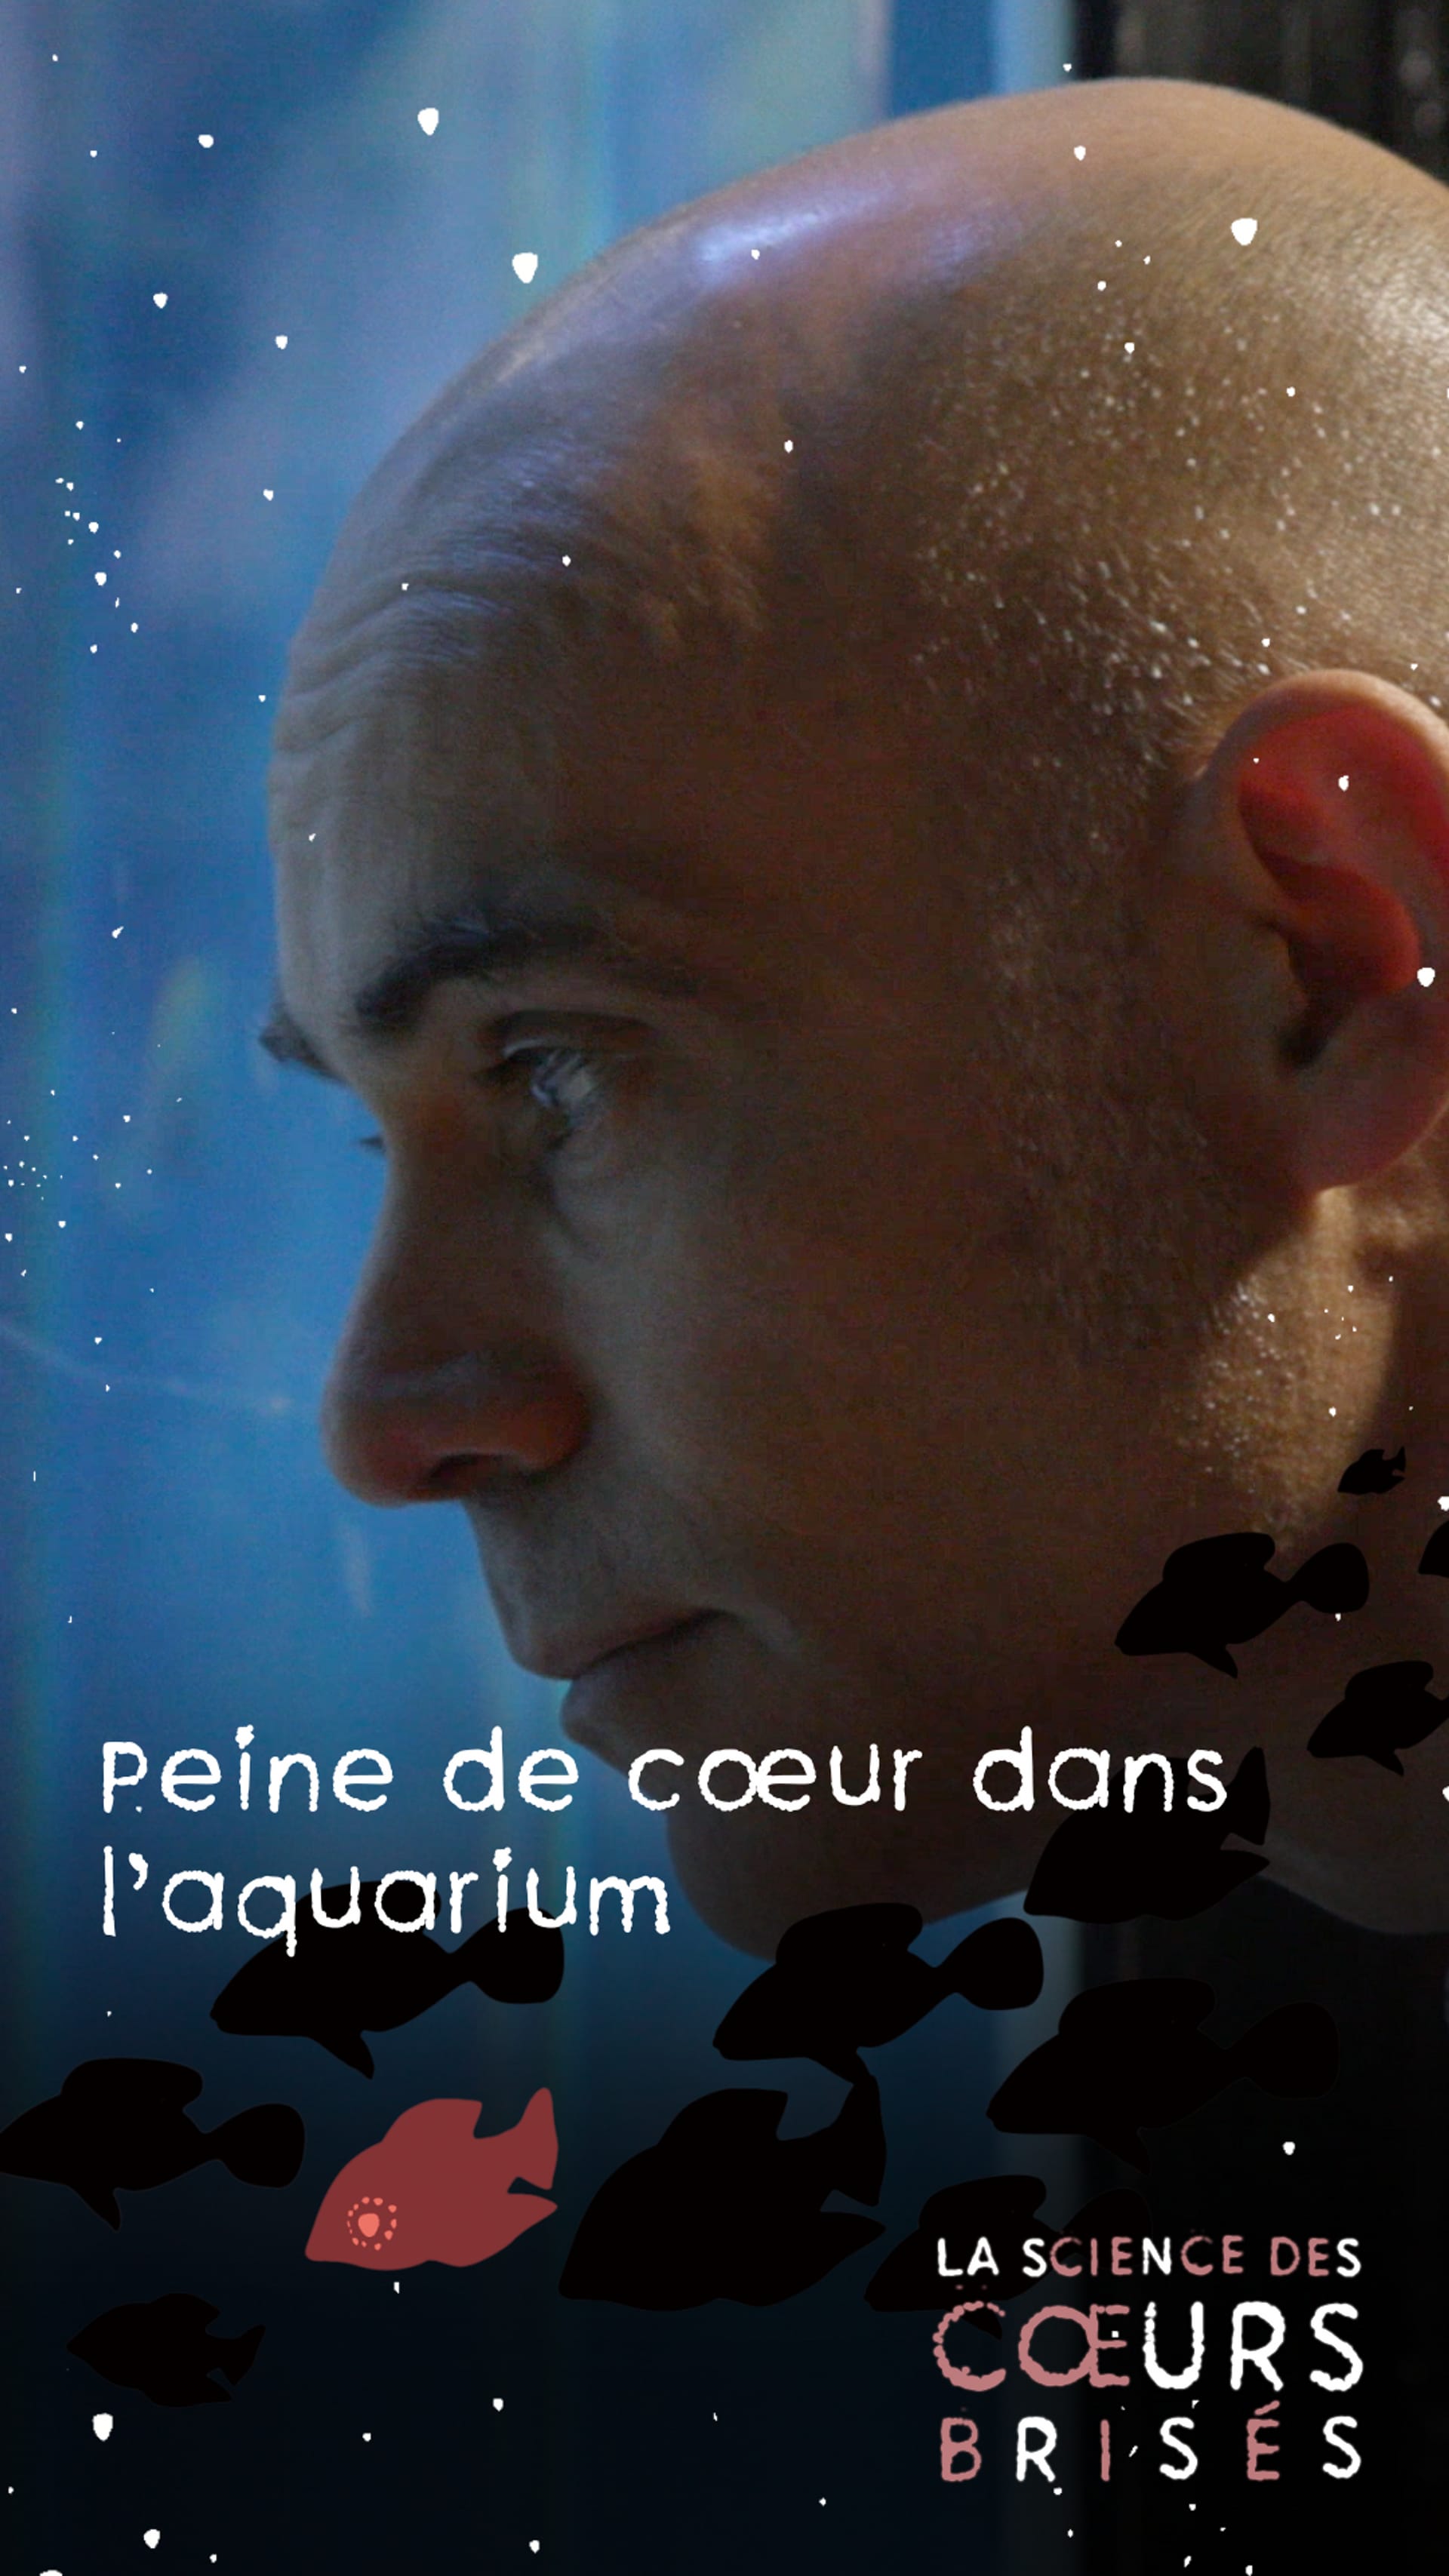 La science des coeurs brisés - Peine de coeur dans l'aquarium - Play RTS